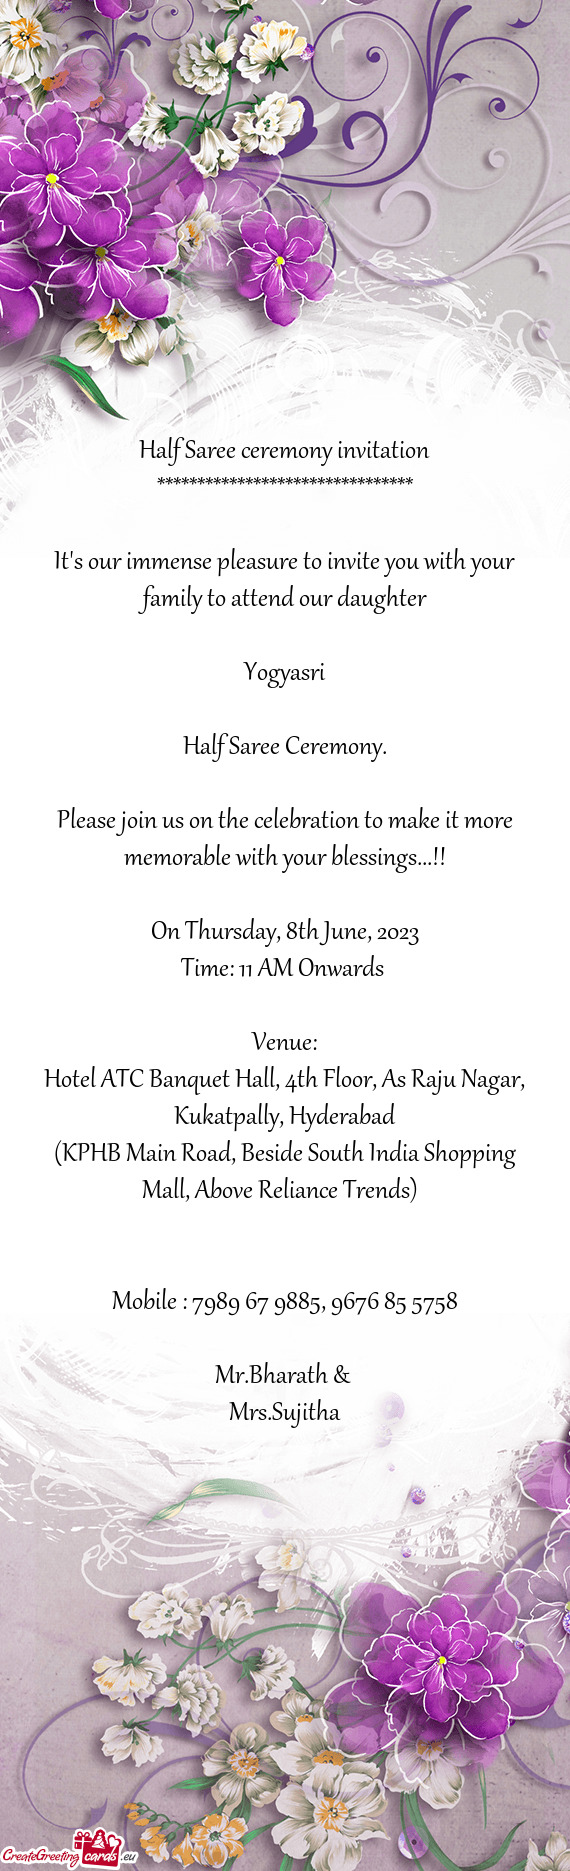 Hotel ATC Banquet Hall, 4th Floor, As Raju Nagar, Kukatpally, Hyderabad